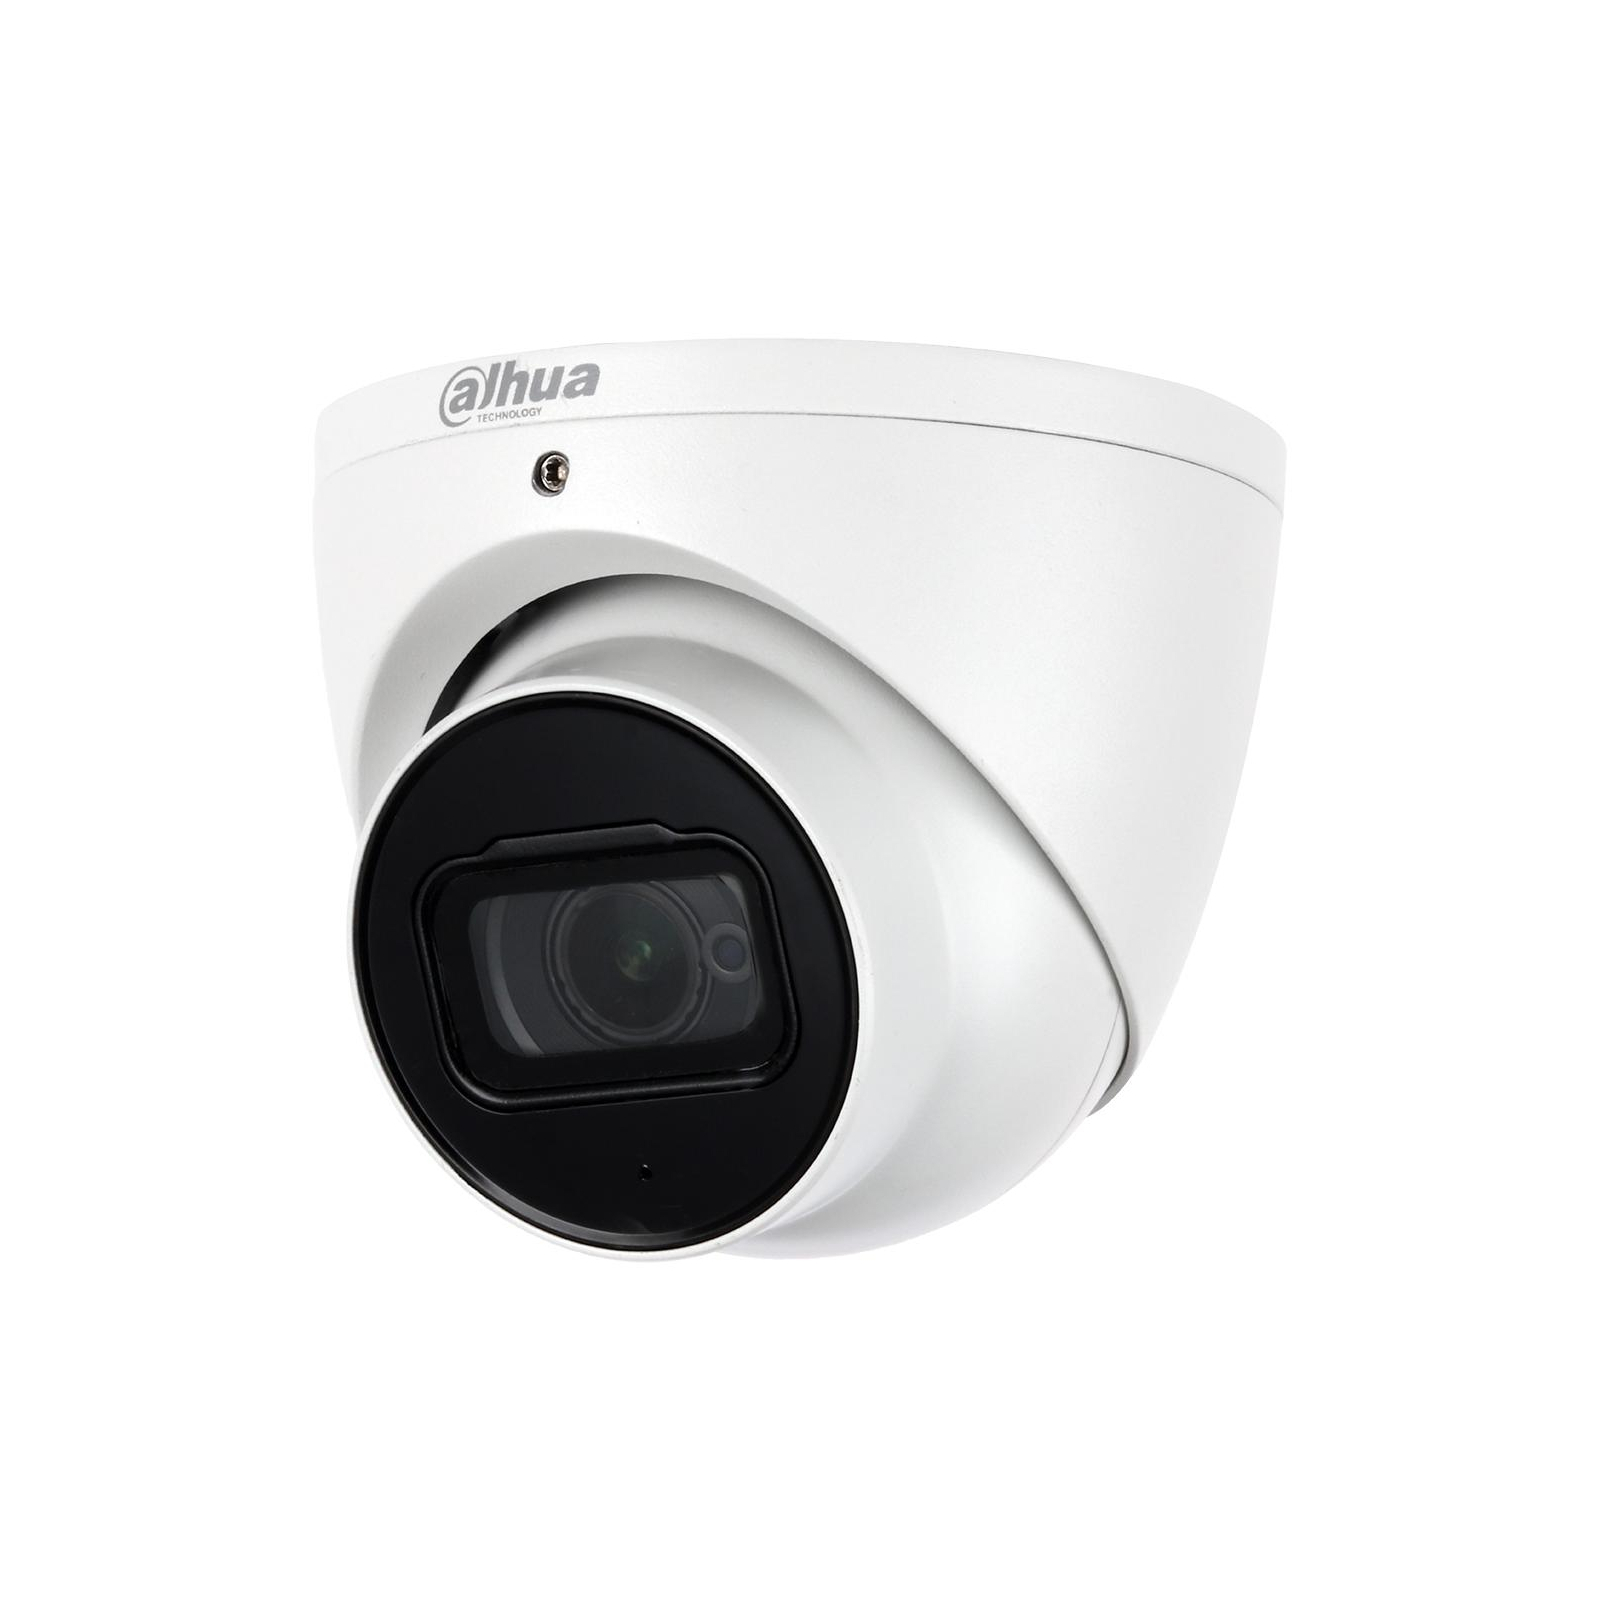 Камера видеонаблюдения Dahua DH-HAC-HDW2249TP-I8-A-NI (3.6) (DH-HAC-HDW2249TP-I8-A-NI)